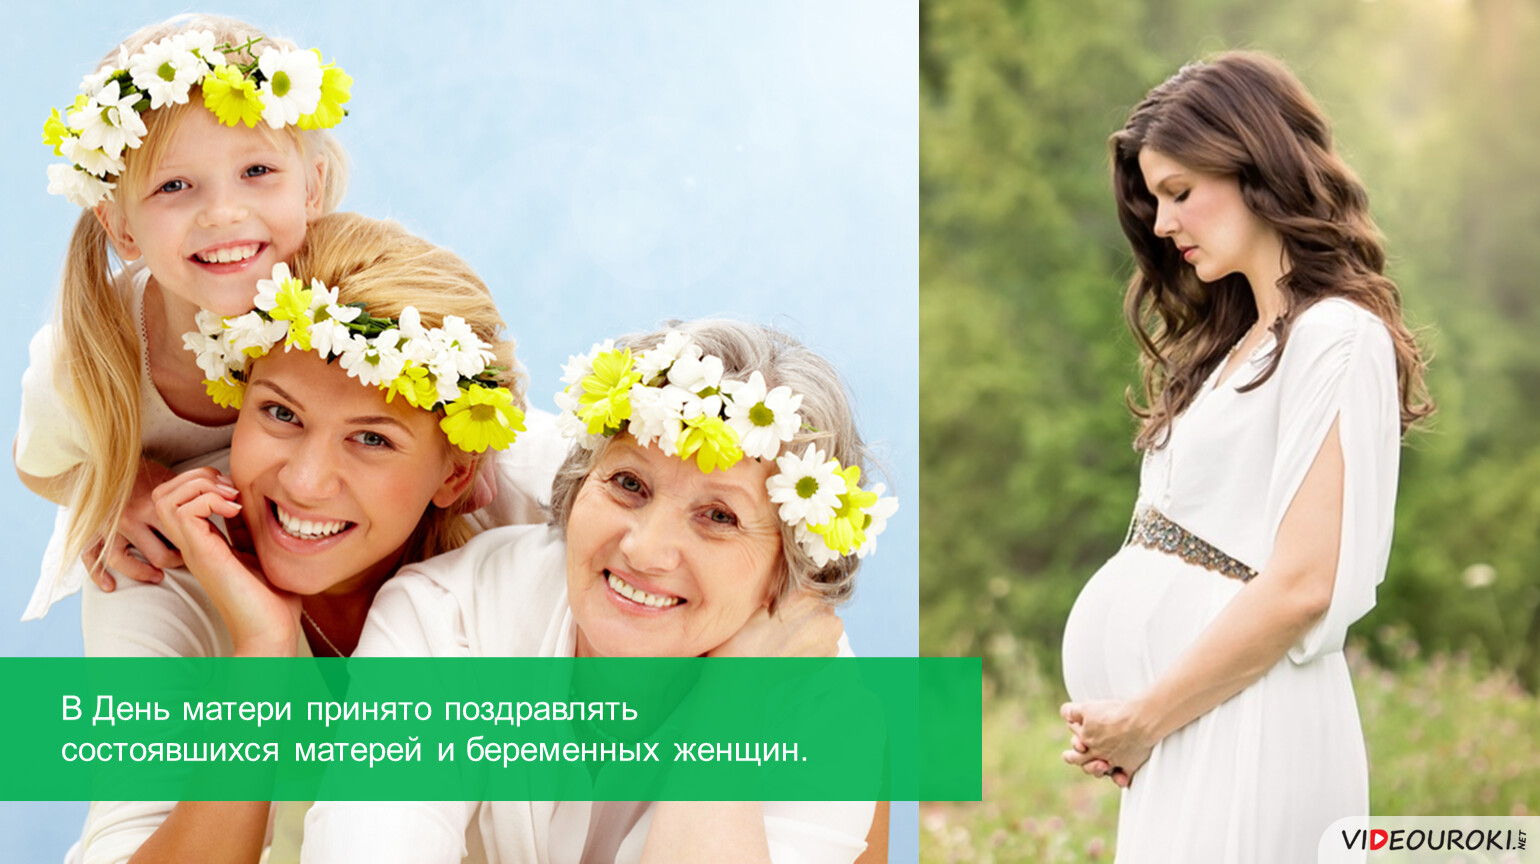 В день матери принято. Принять маму. День материнства и красоты в Армении. Как принять материнство.